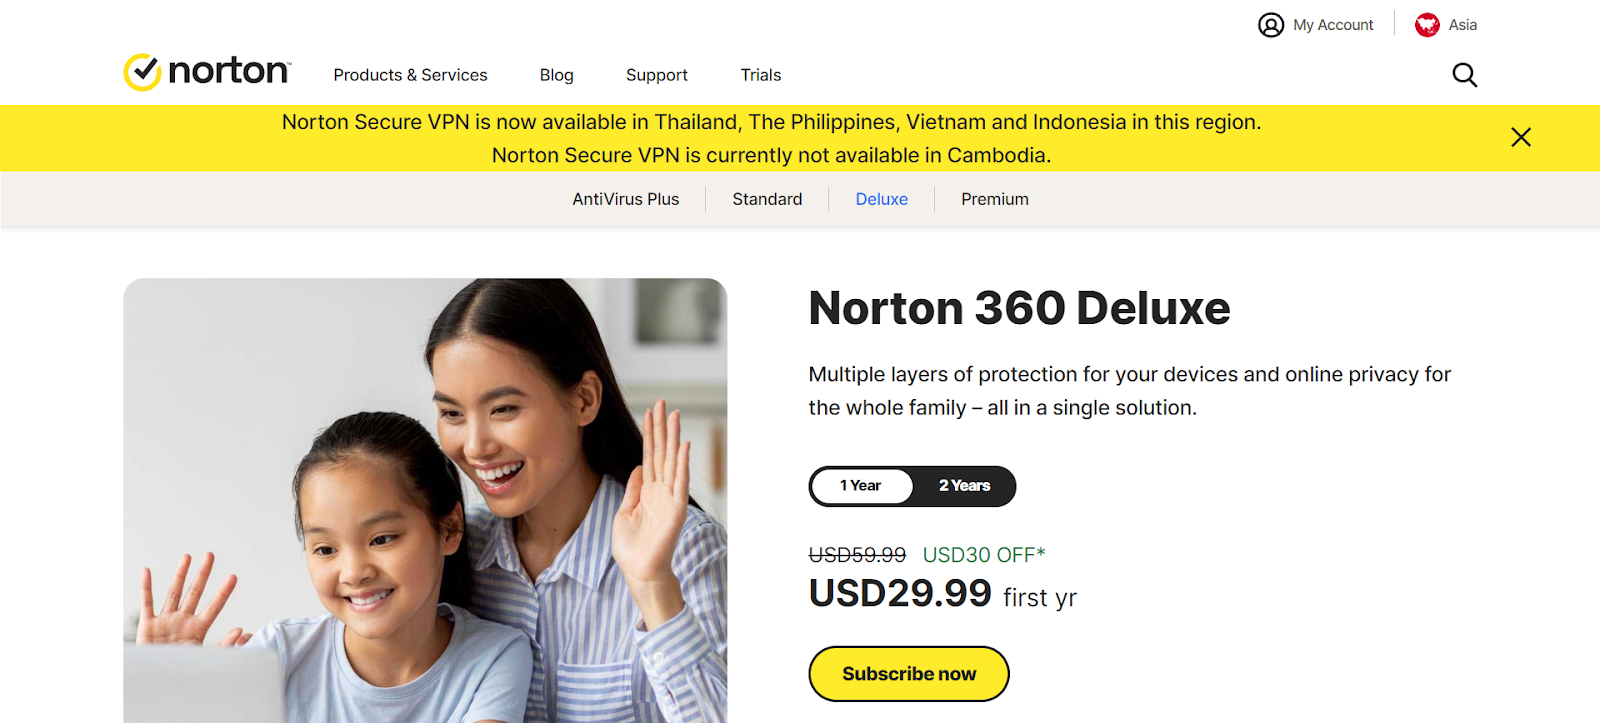 A screenshot of Norton 360 Deluxe's website